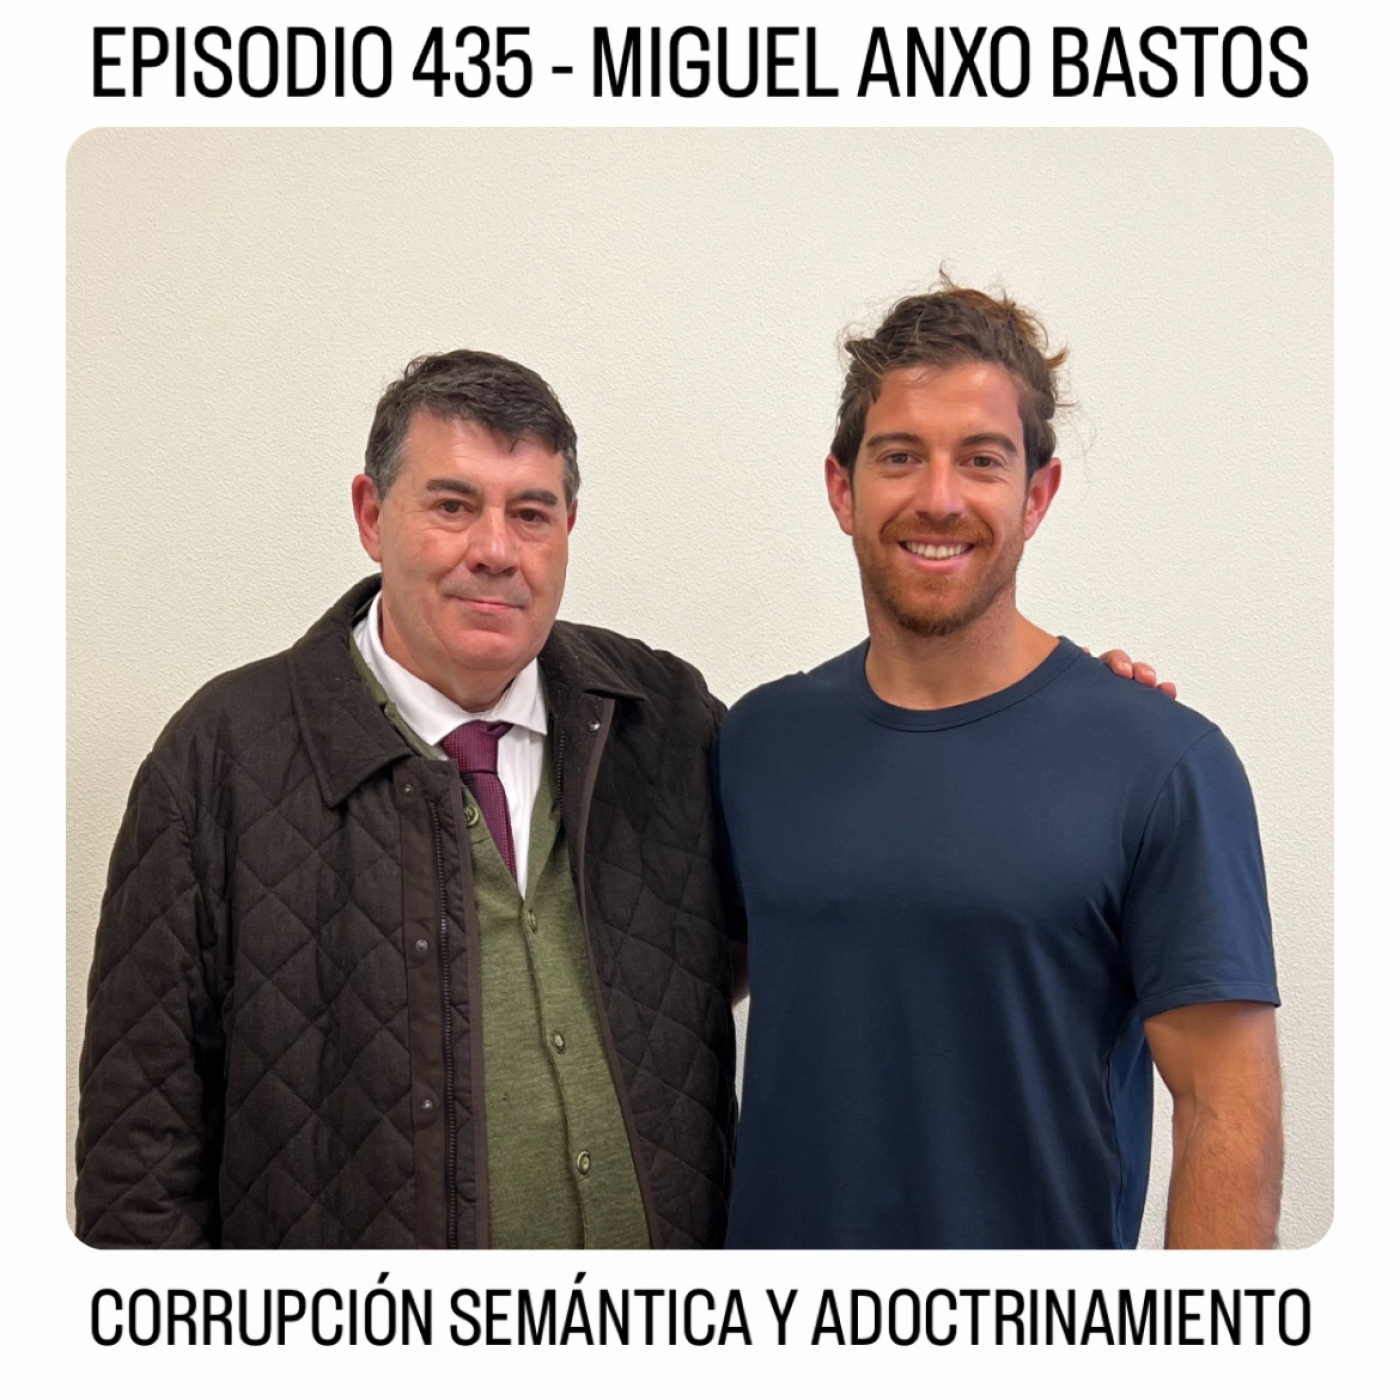 CORRUPCIÓN SEMÁNTICA Y ADOCTRINAMIENTO - Profesor Miguel Anxo Bastos